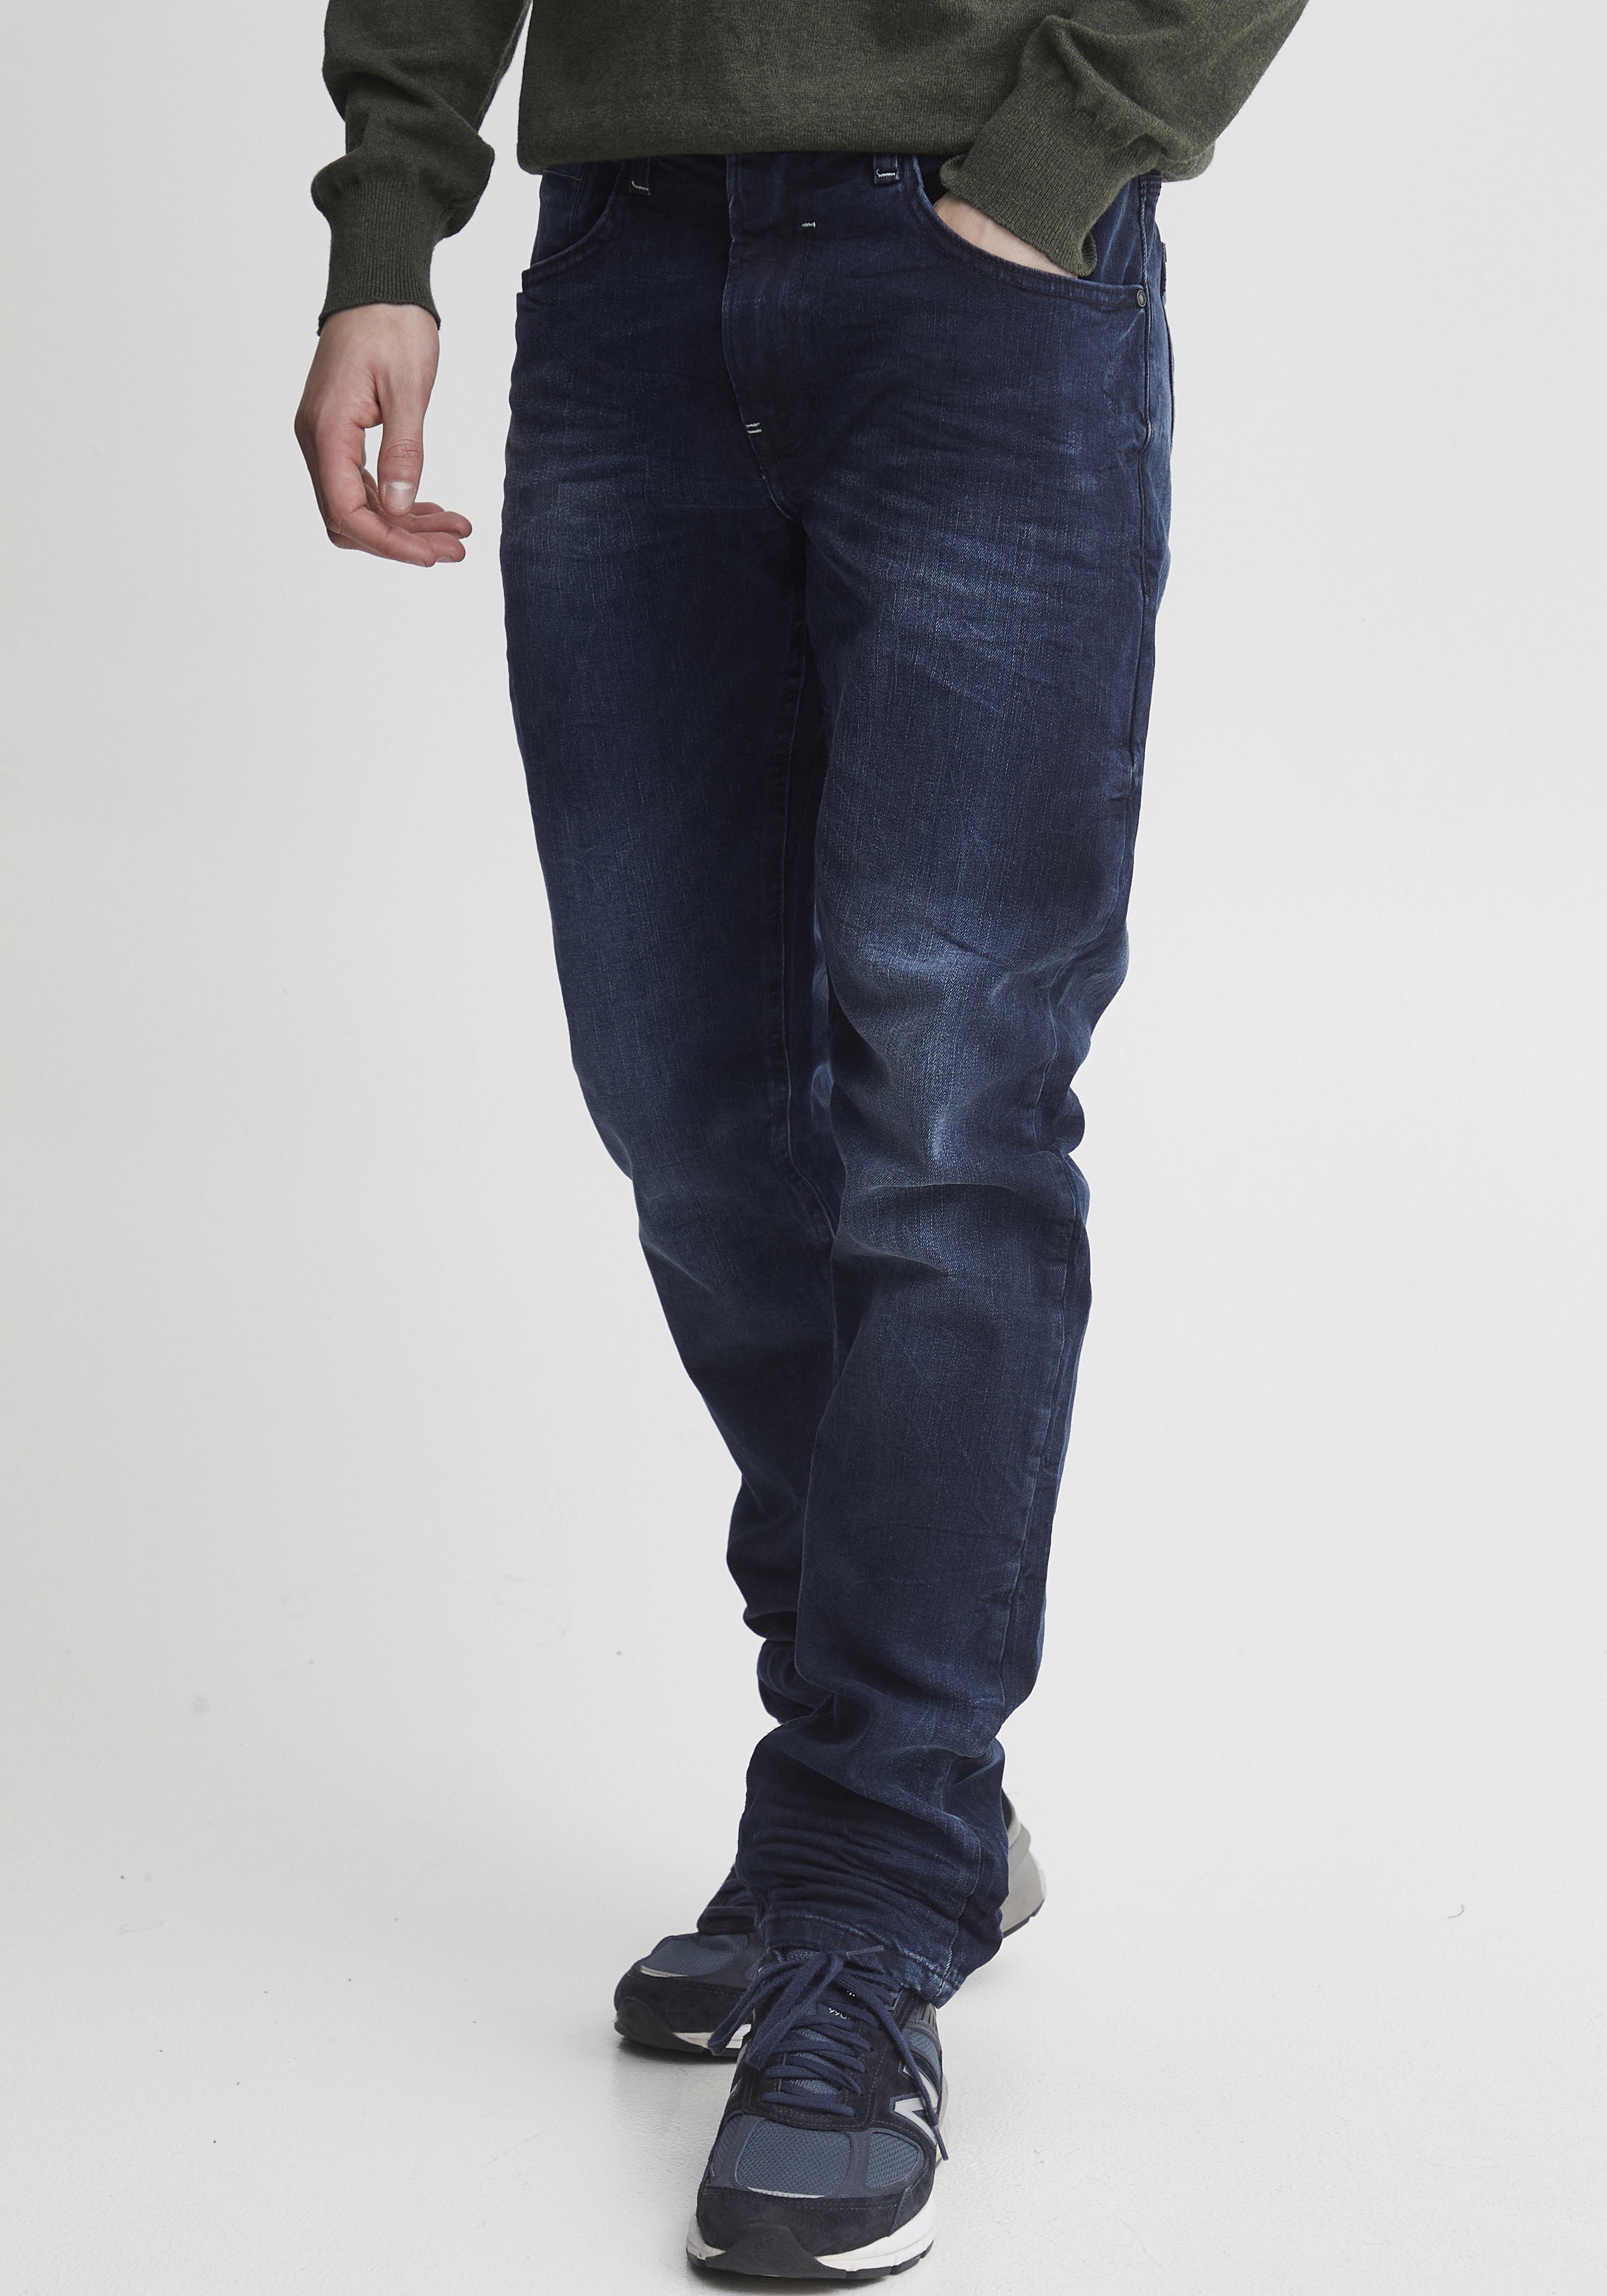 Blend Herren Twister Slim fit Jeanshose, Blau (Middle Blue 76201), W36/L32 (Herstellergröße: 36)